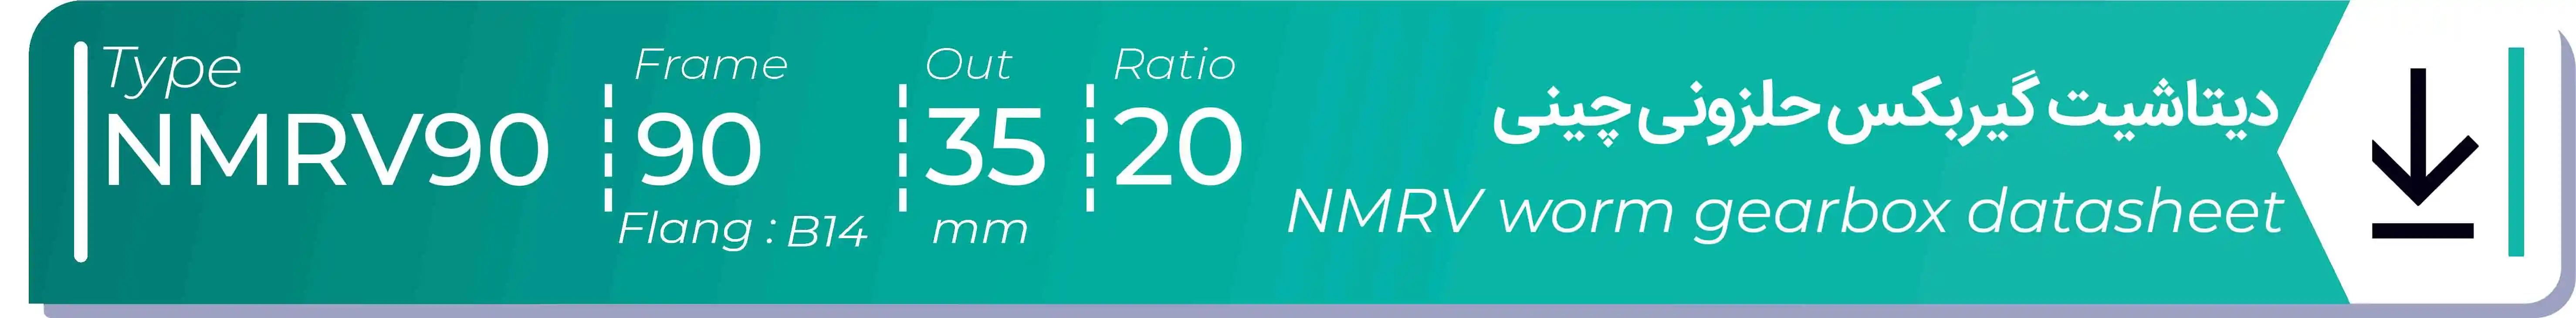  دیتاشیت و مشخصات فنی گیربکس حلزونی چینی   NMRV90  -  با خروجی 35- میلی متر و نسبت20 و فریم 90